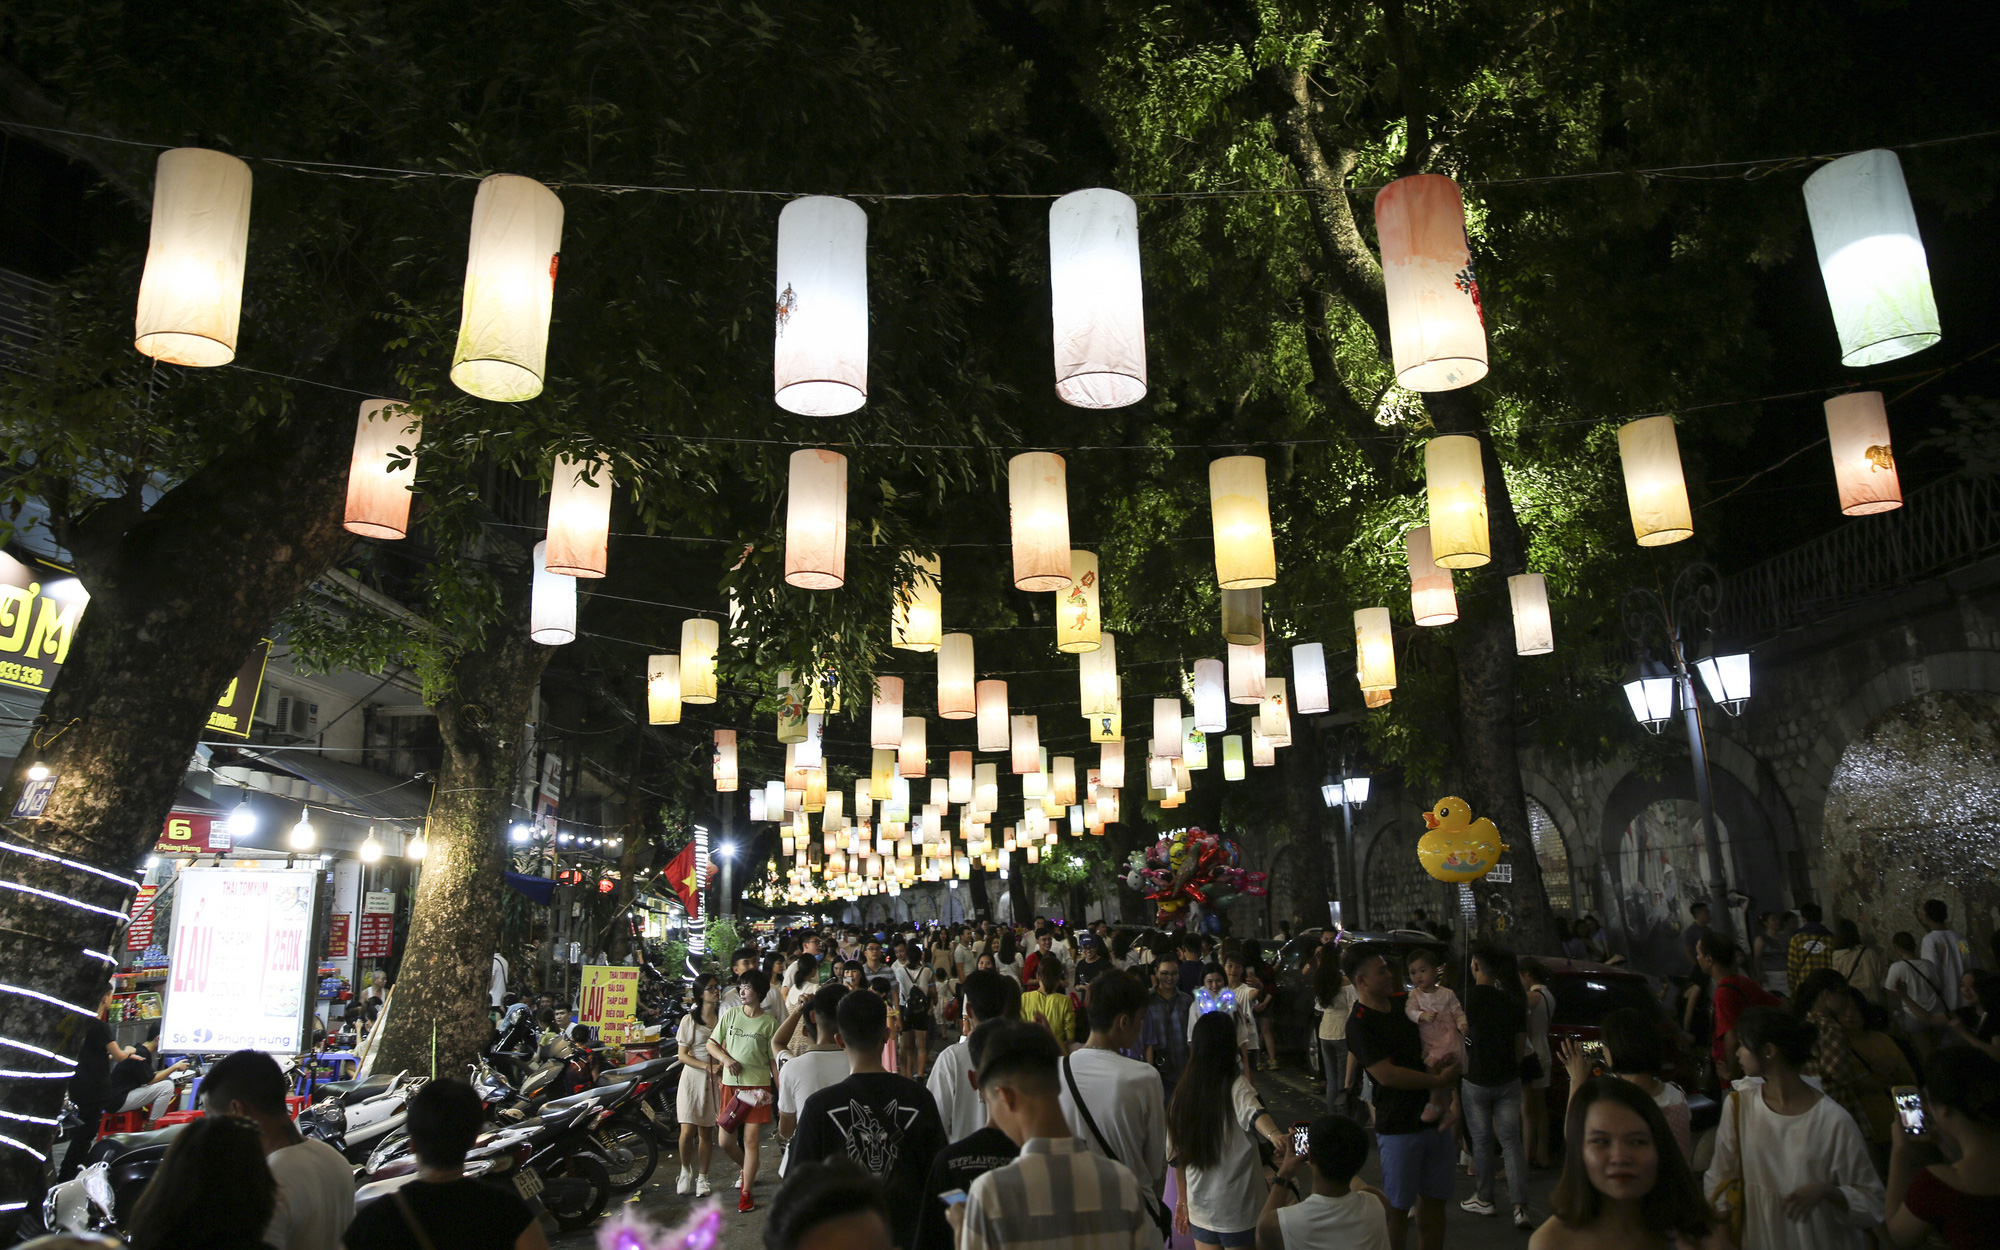 Hàng nghìn người đổ về phố bích họa Phùng Hưng thưởng lãm đèn lồng